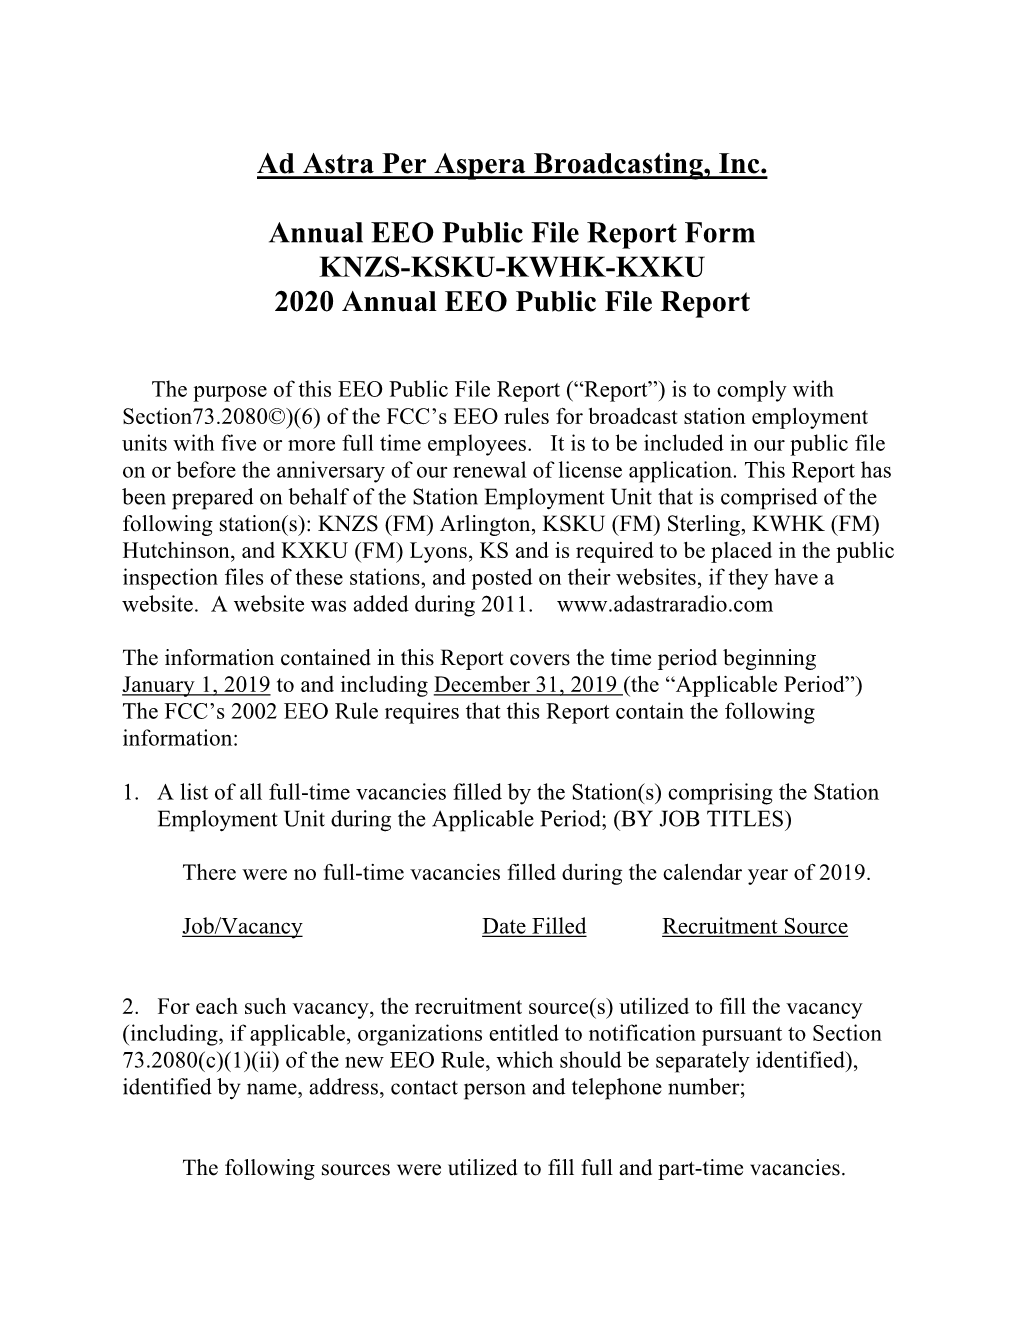 Ad Astra Per Aspera Broadcasting, Inc. Annual EEO Public File Report